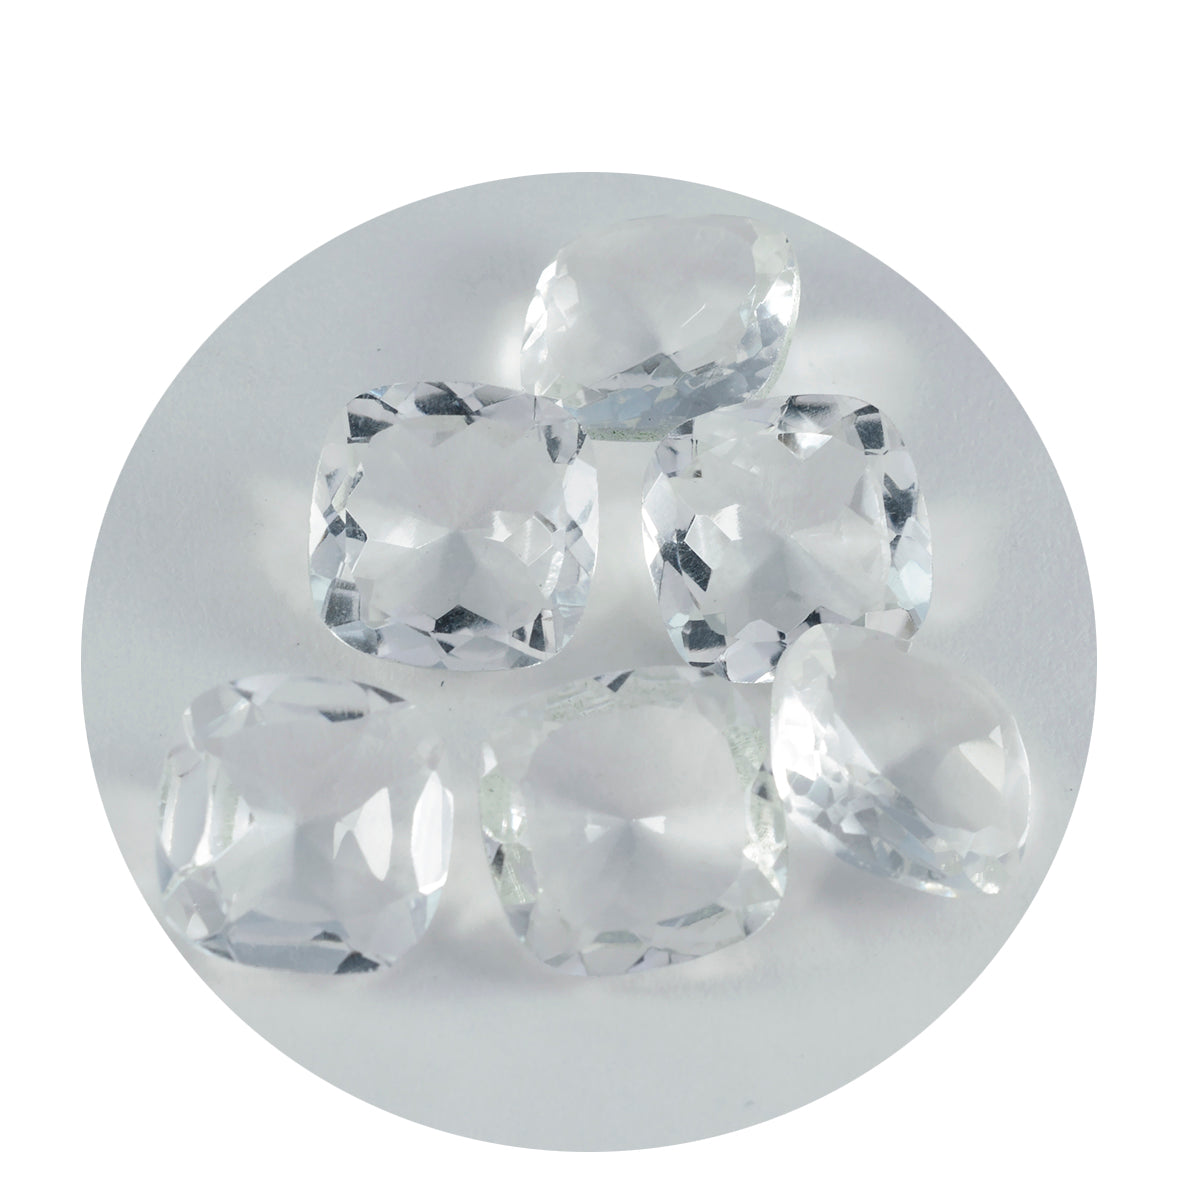 Riyogems 1 Stück weißer Kristallquarz, facettiert, 13 x 13 mm, Kissenform, Edelsteine von erstaunlicher Qualität